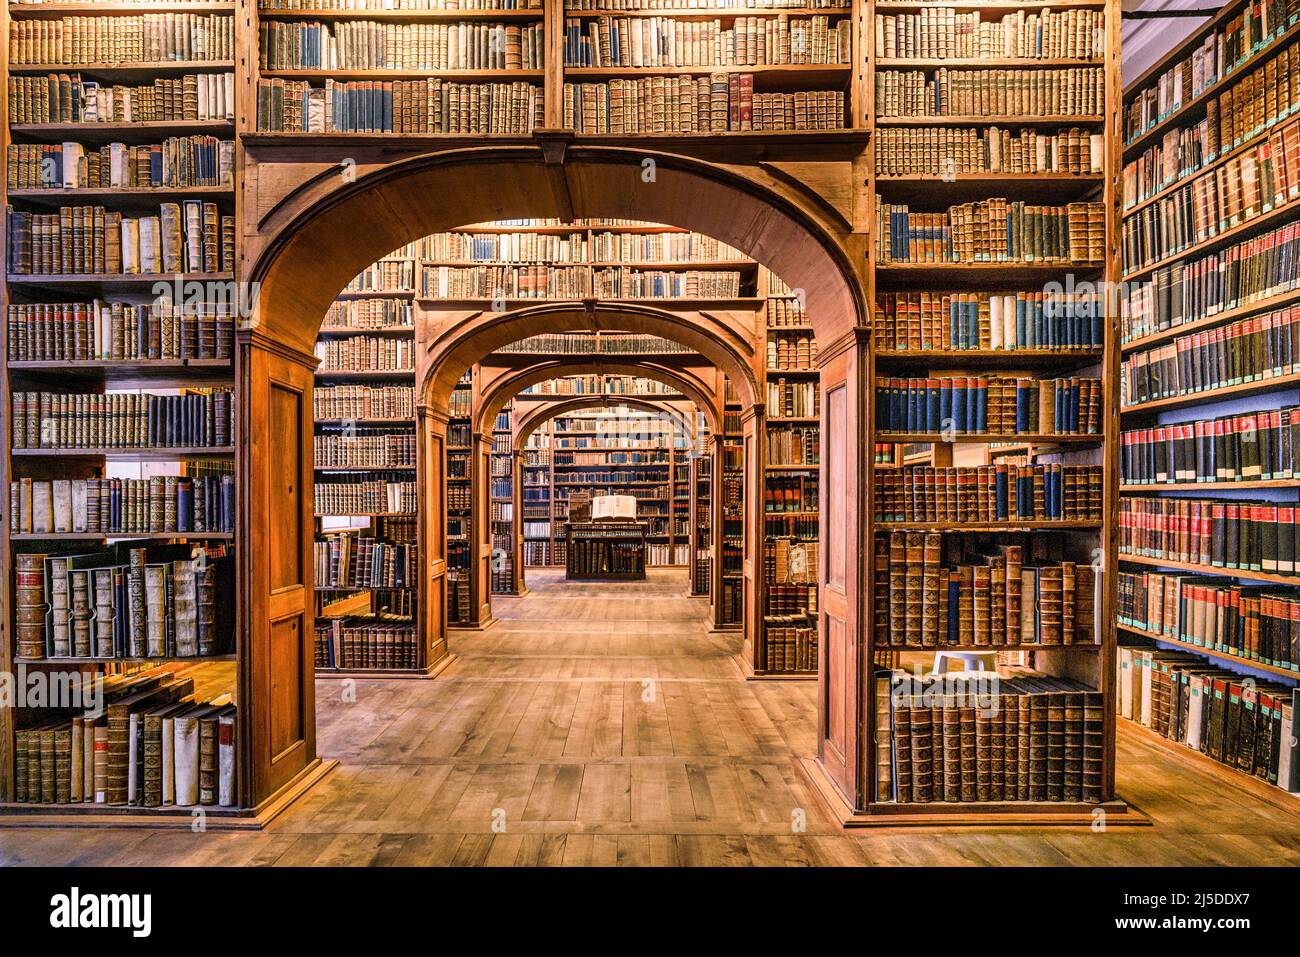 Oberlausitzische Bibliothek der Wissenschaften, Görlitz, Oberlausitz, Sachsen, Deutschland, Europa Foto Stock